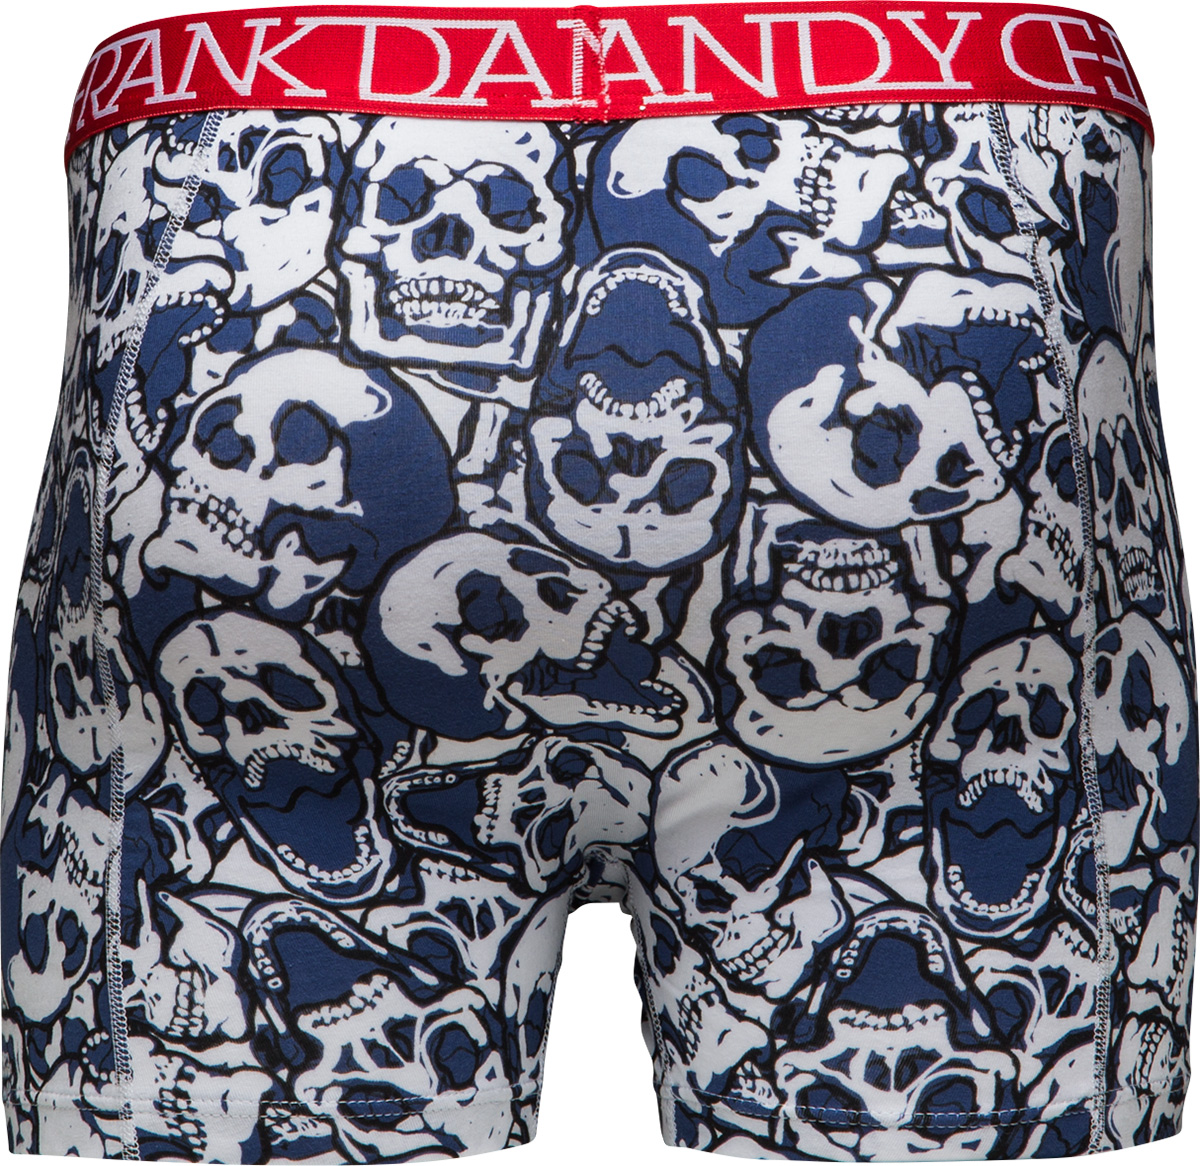 Frank Dandy Assorted Skulls Boxer Dark Navy S